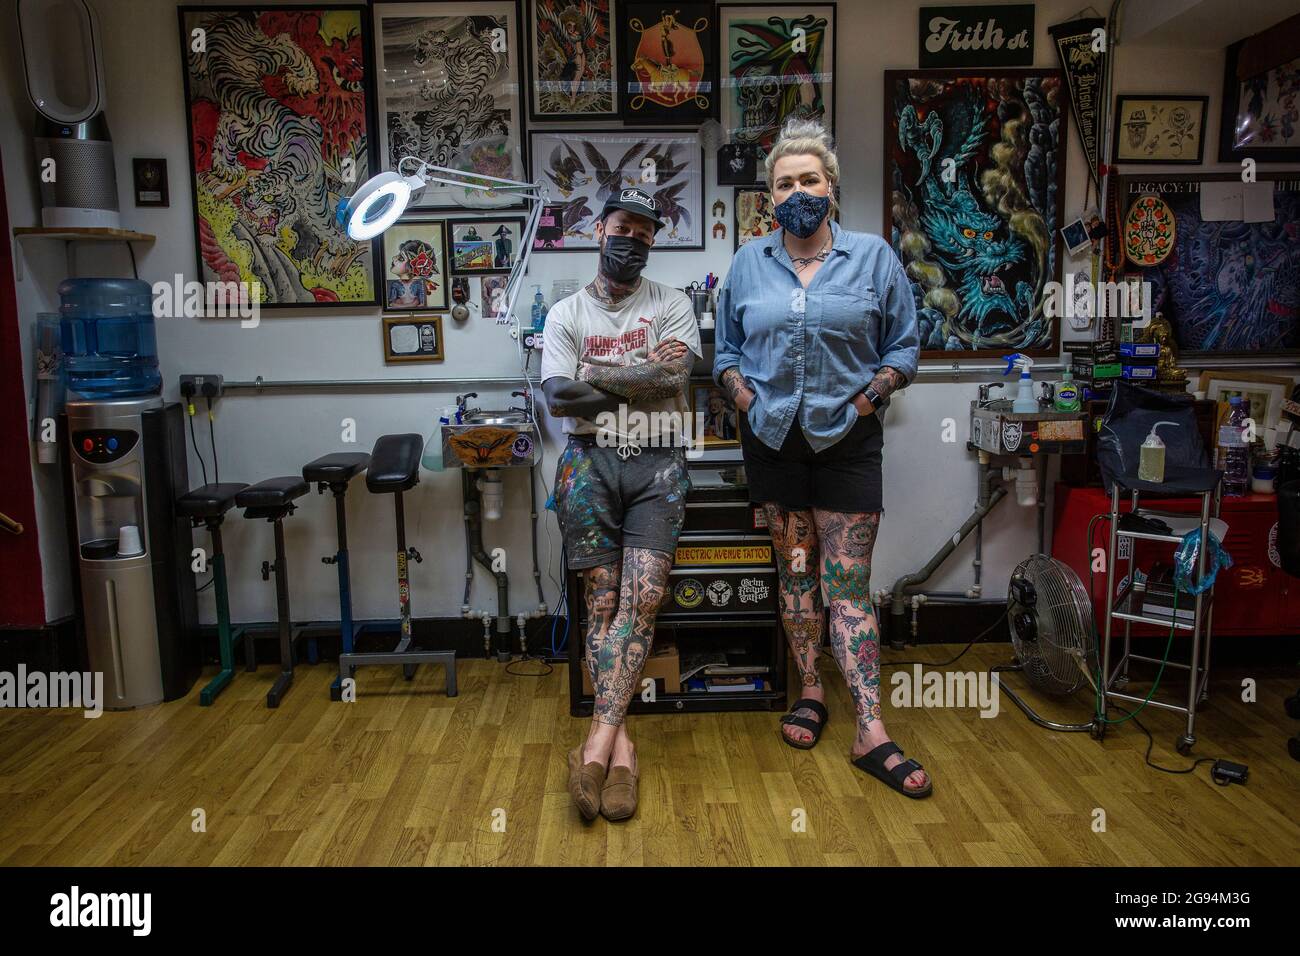 Männliche und weibliche Tattoo-Künstler tragen Gesichtsmaske im Tattoo-Studio Frith Street Tattoo in Soho, London, Großbritannien Stockfoto